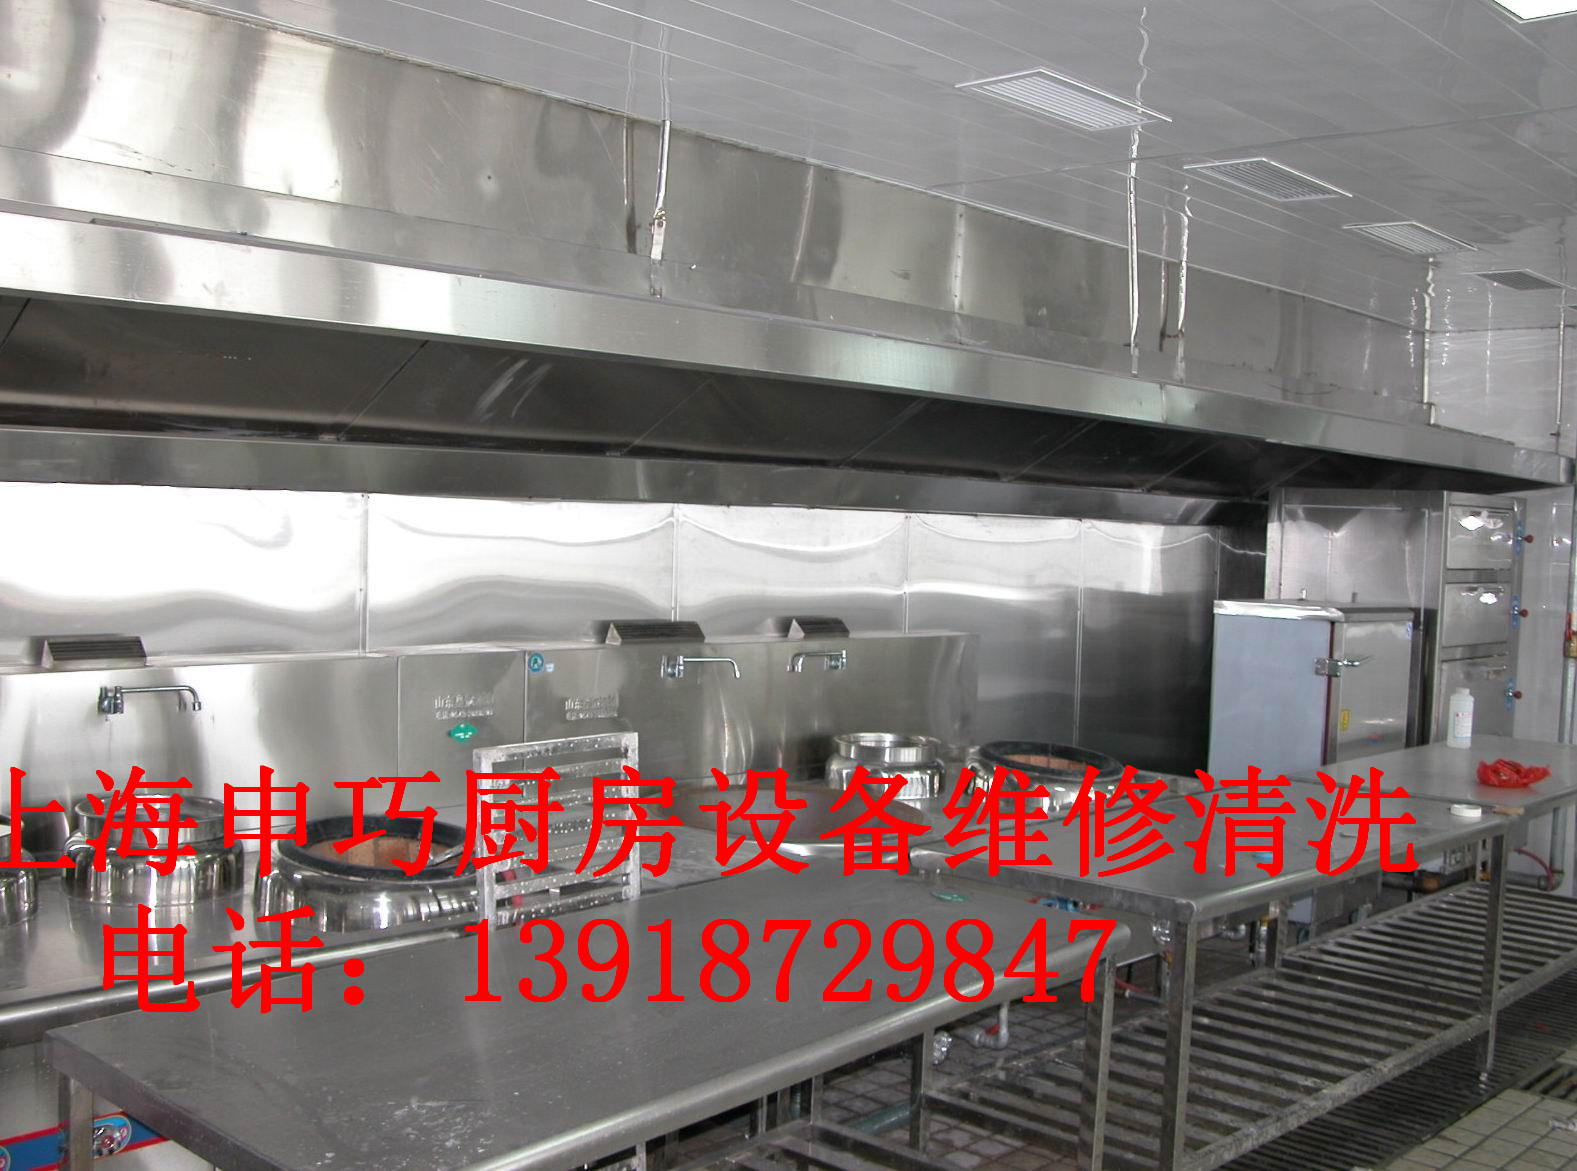 松江区食堂大型油烟净化器清冼,上海厨房设备维修